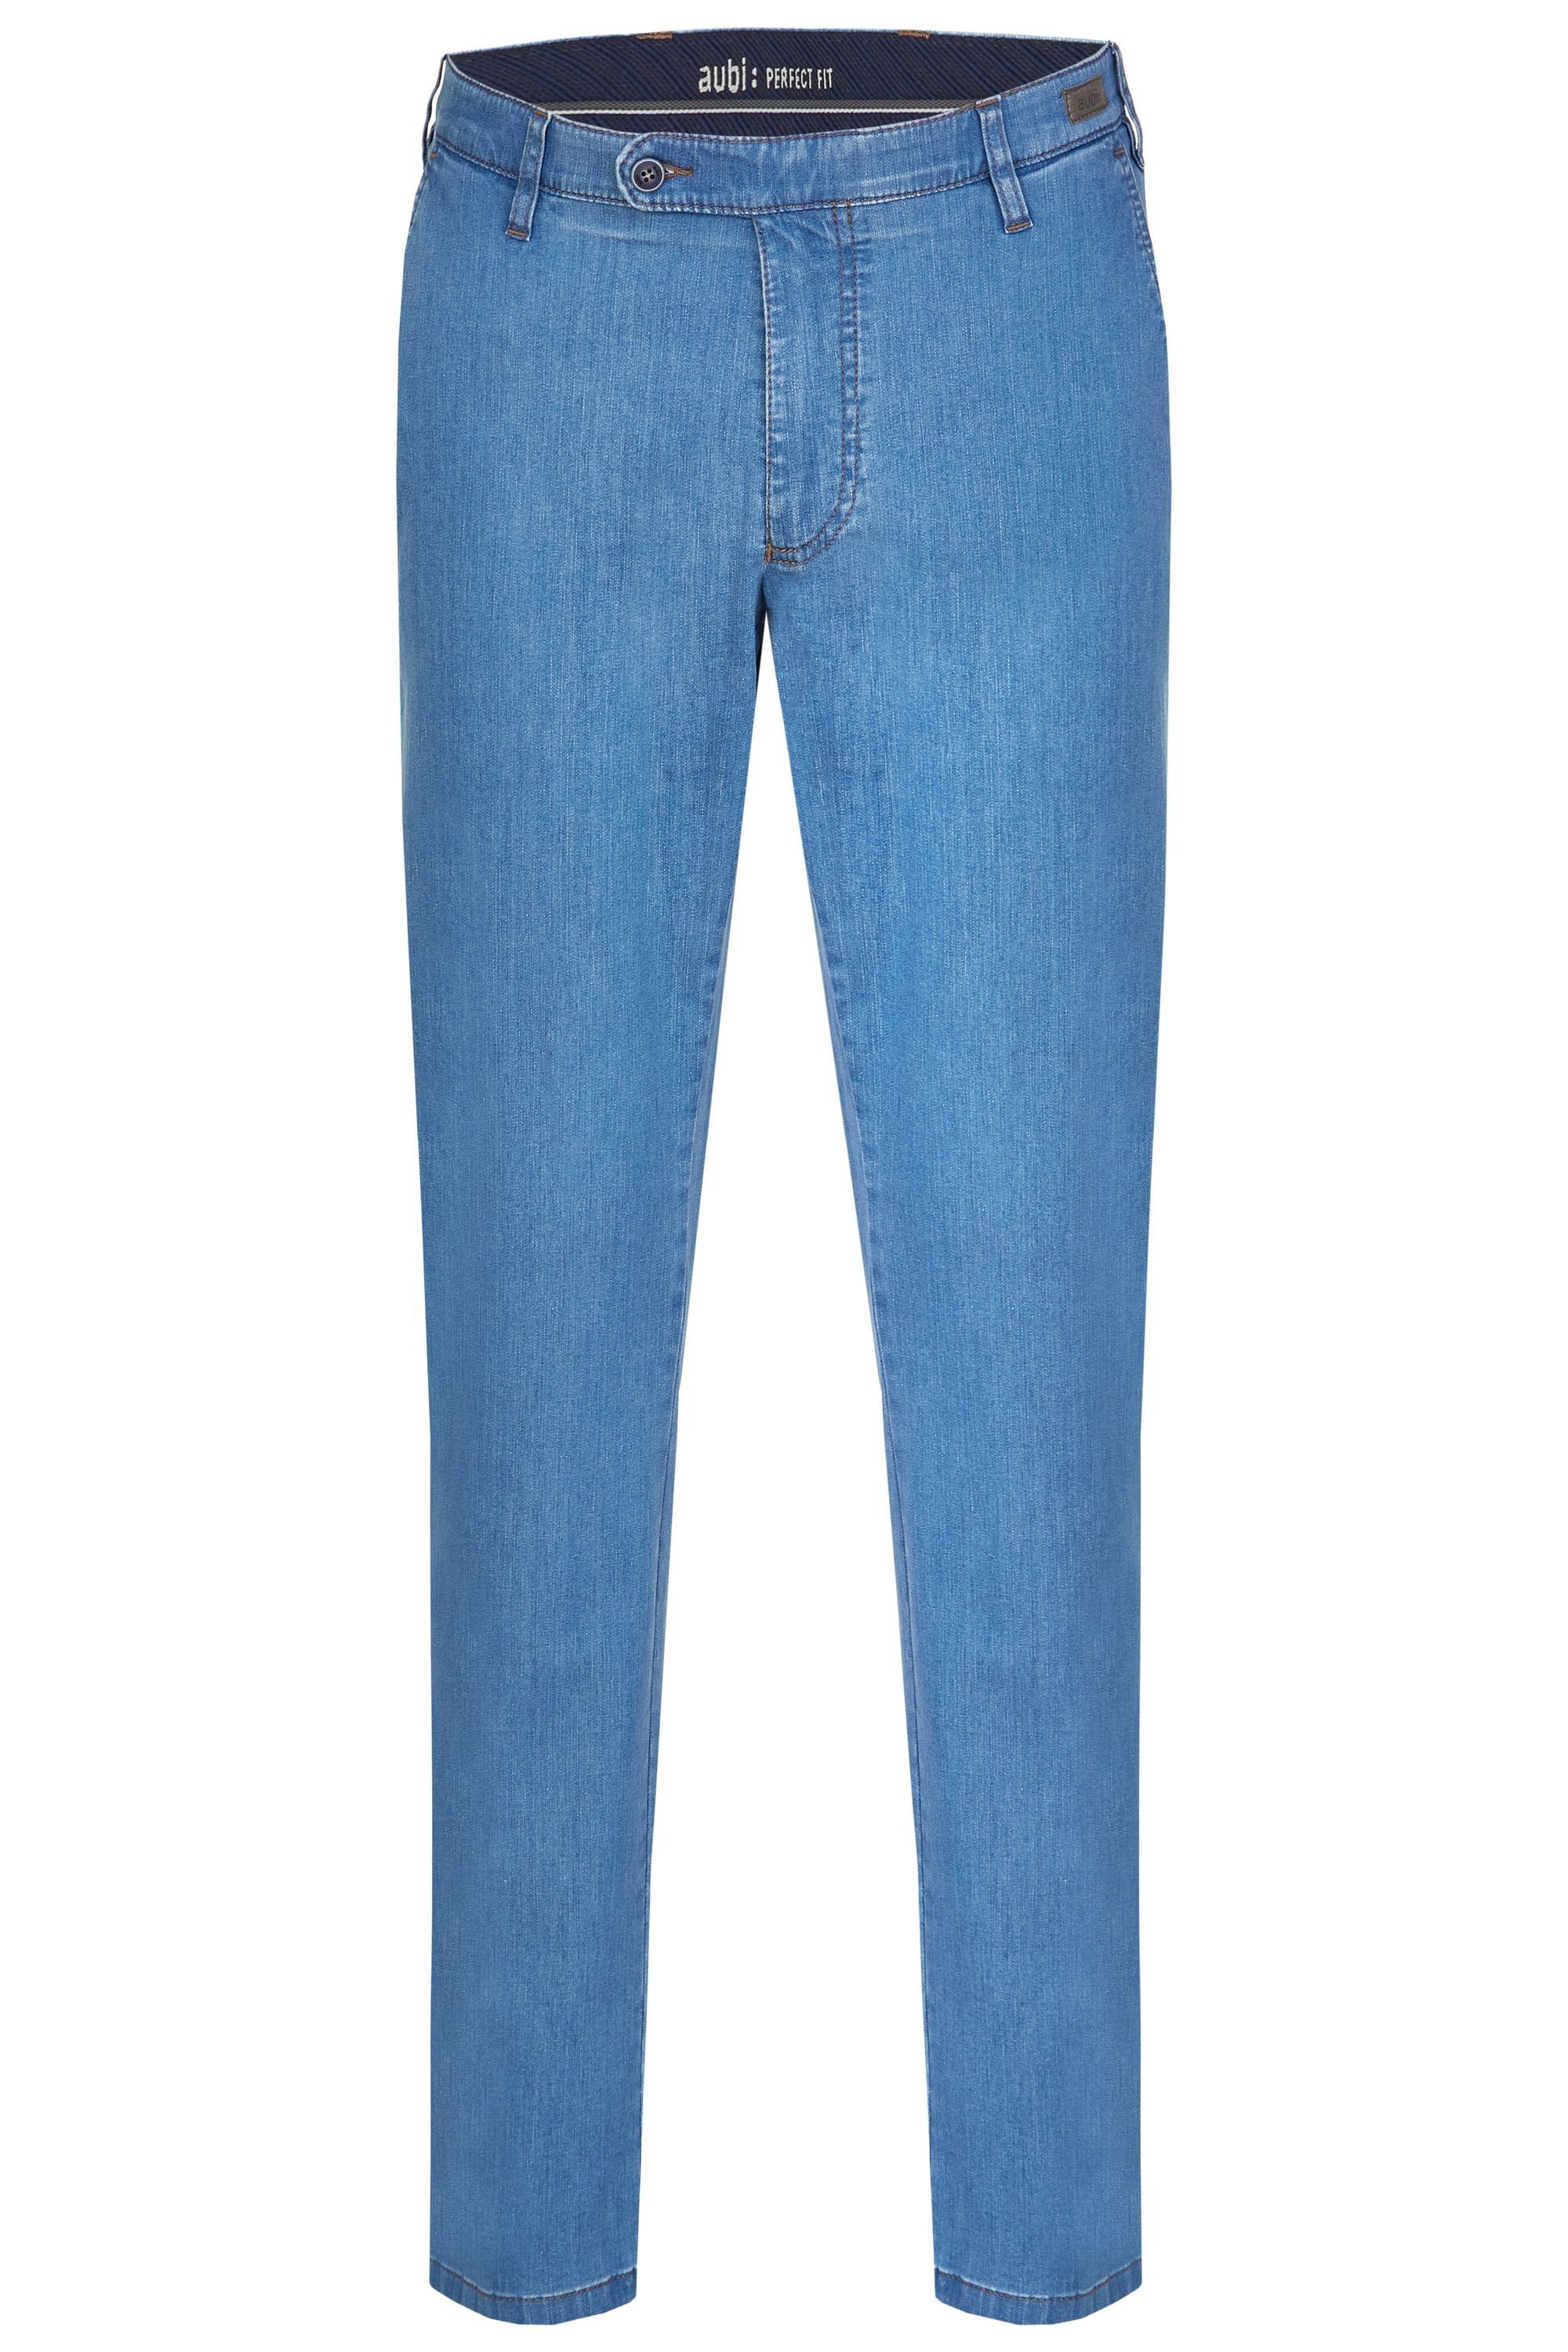 aubi: Bequeme Jeans aubi Perfect Fit Herren Sommer Jeans Hose Stretch aus Baumwolle High Flex Modell 526 bleached (43)